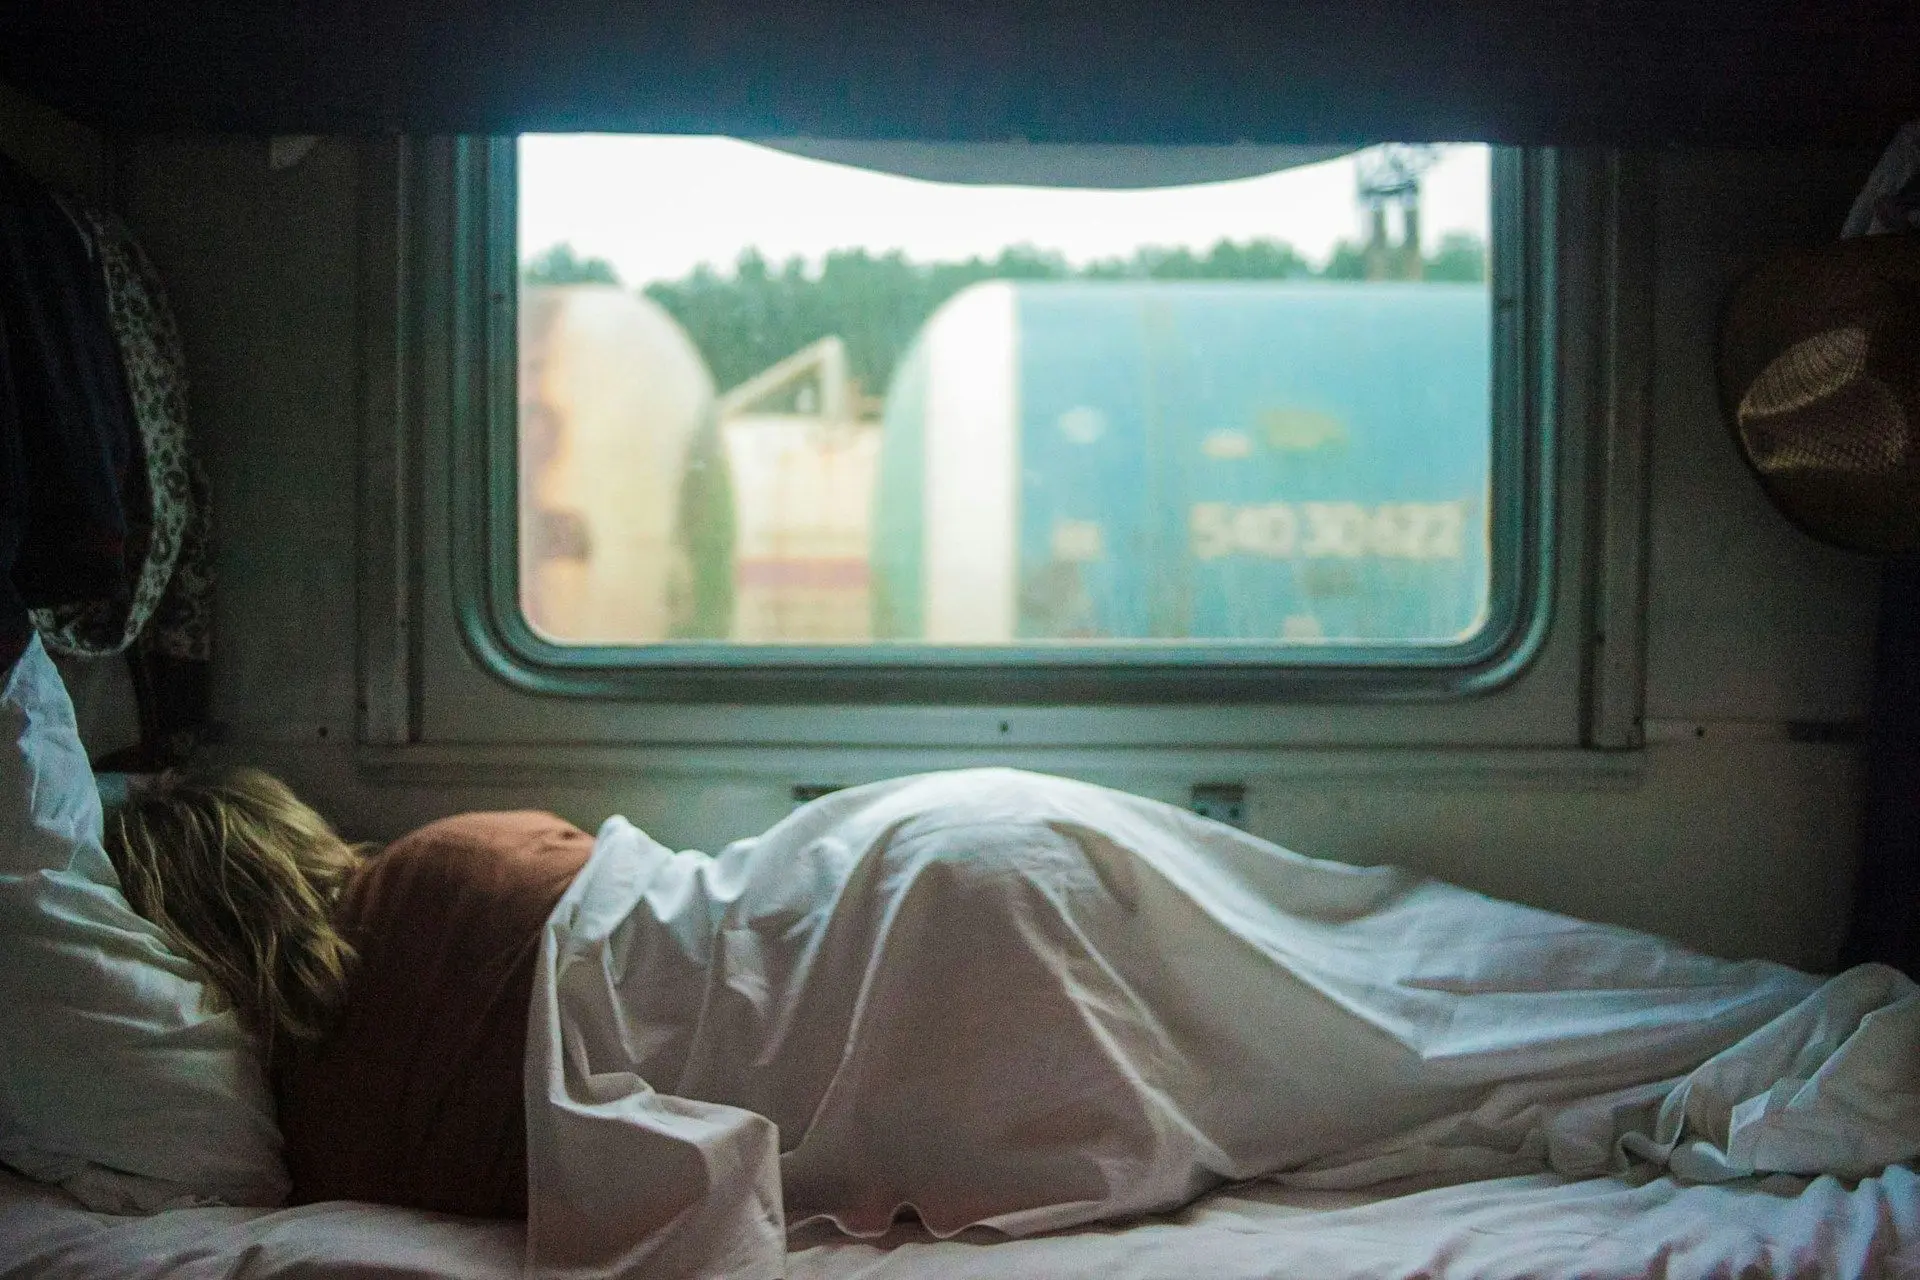 Вчені встановили зв'язок між недостатнім сном і підвищеним ризиком серйозних захворювань. Вони визначили, що для збереження здоров'я потрібно спати певну кількість годин.